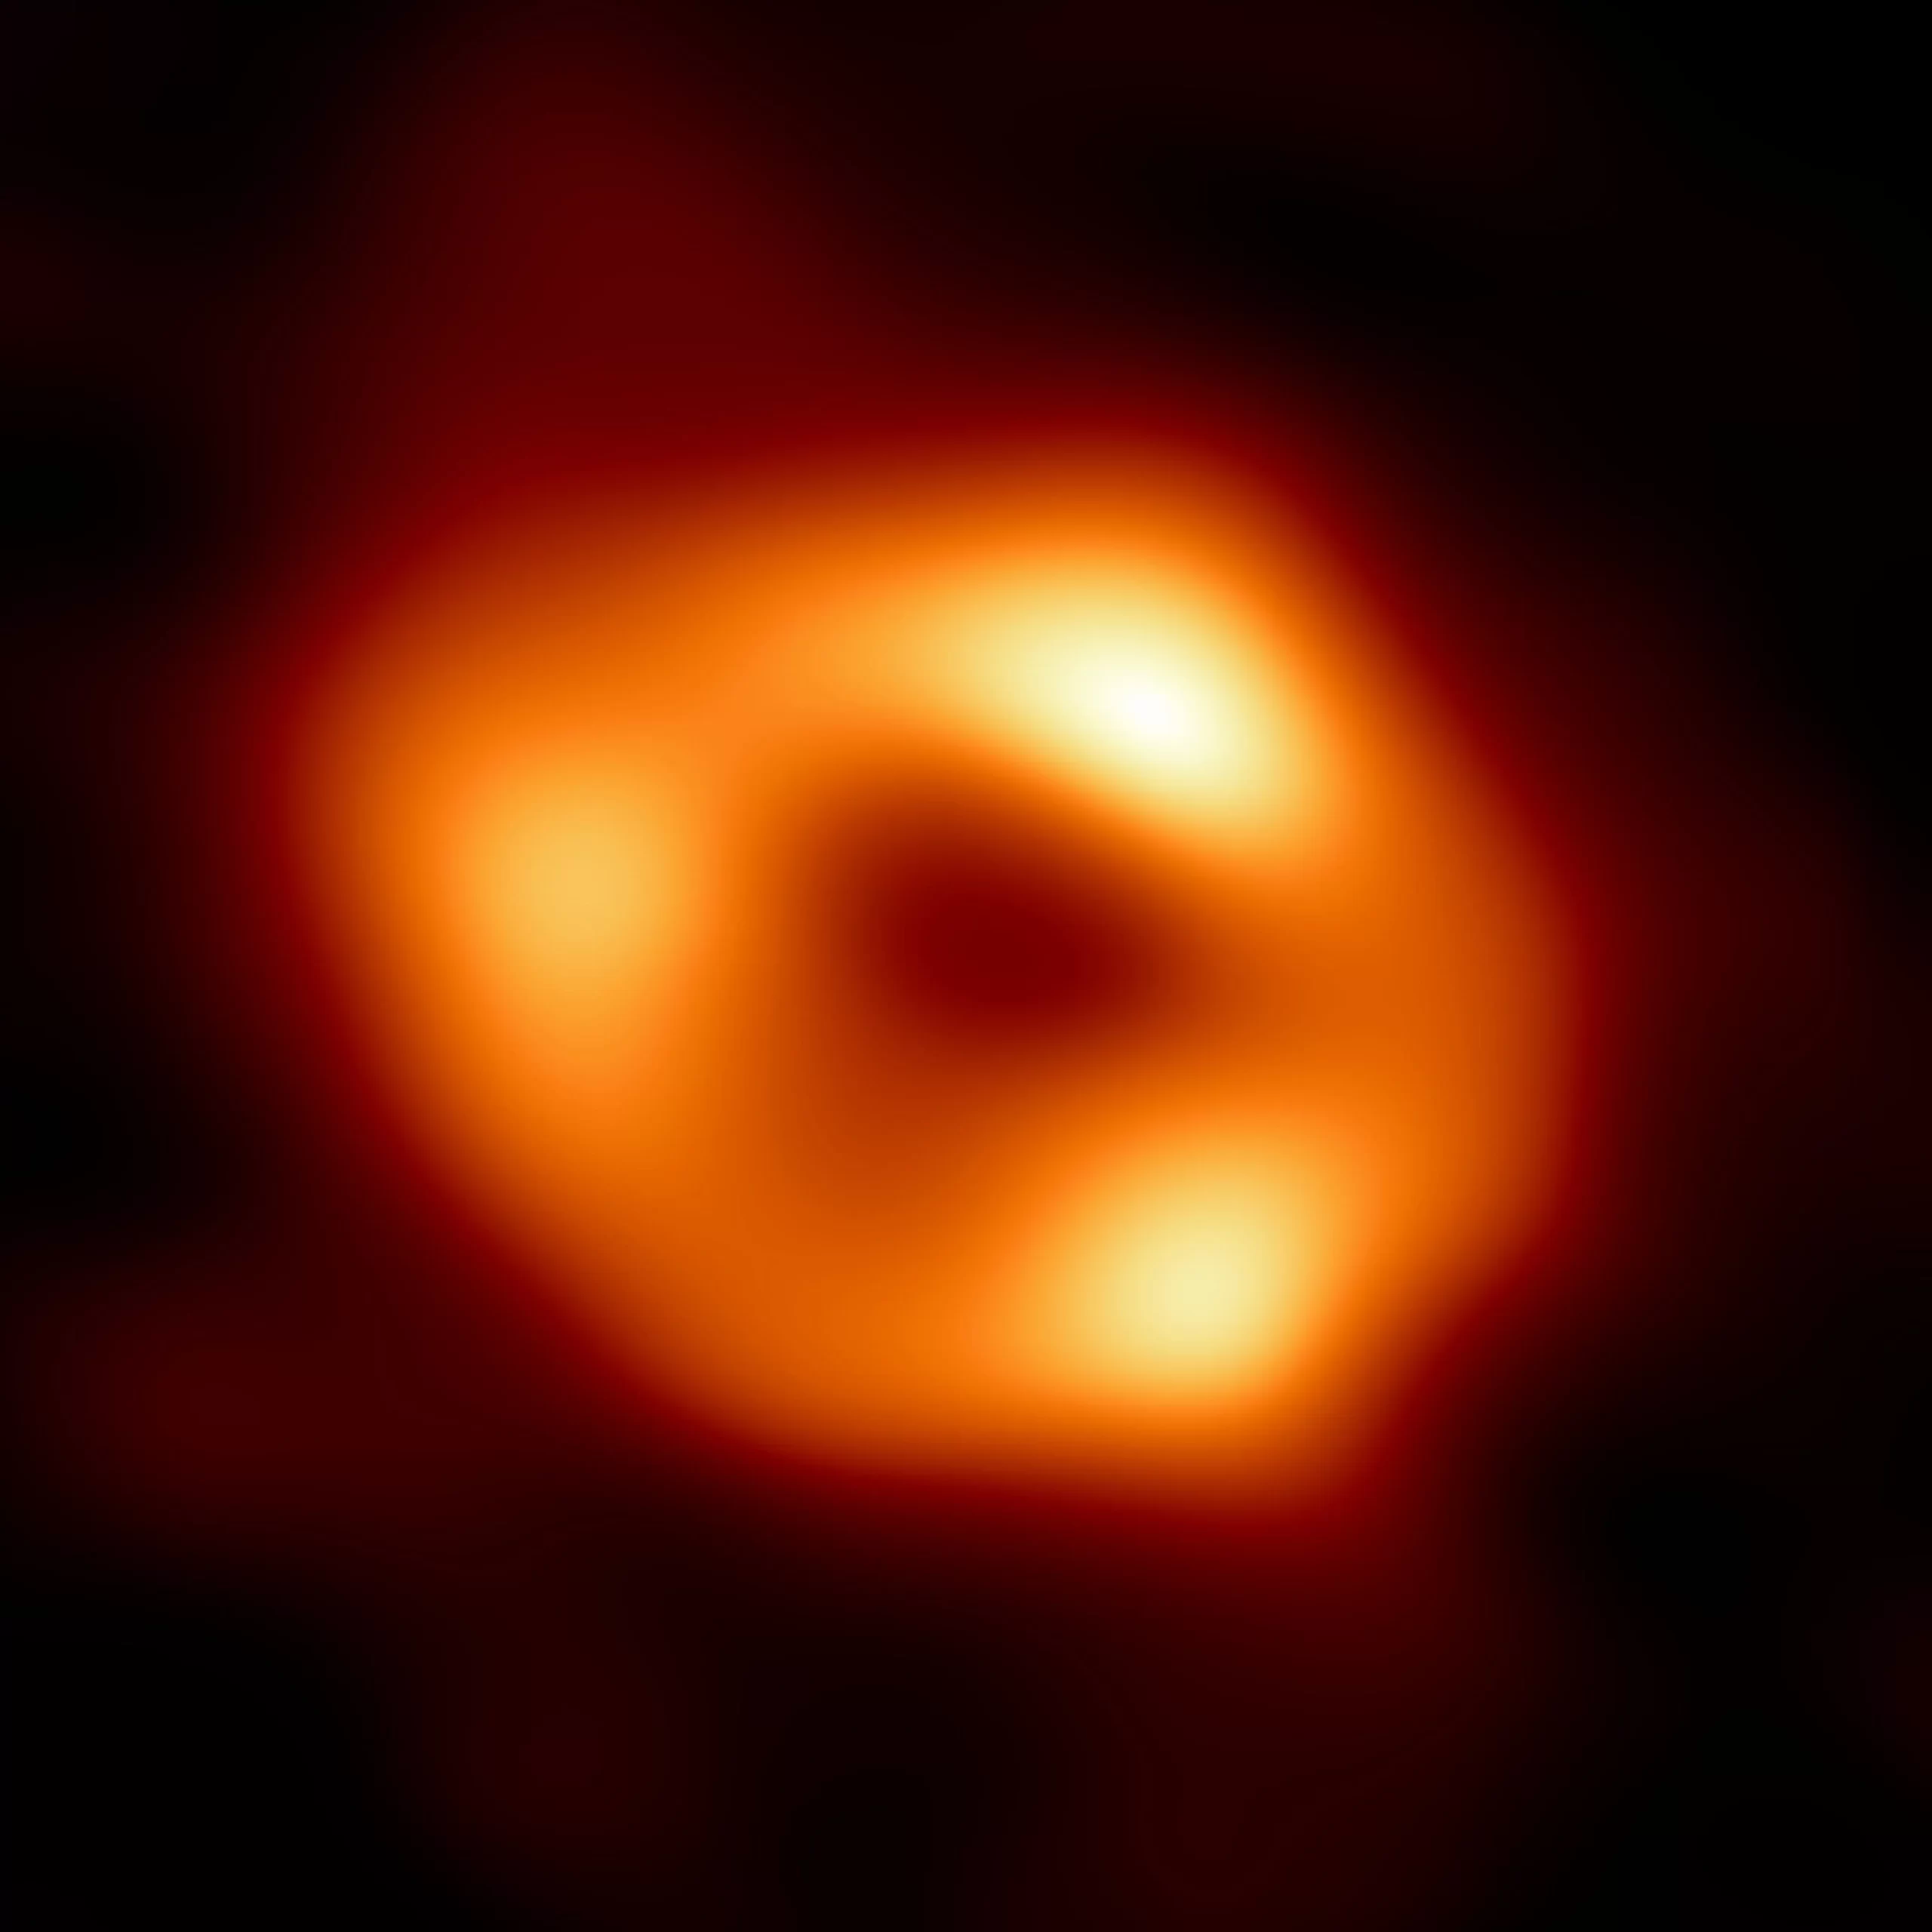 银河系中心超大质量黑洞人马座A星的第一张照片